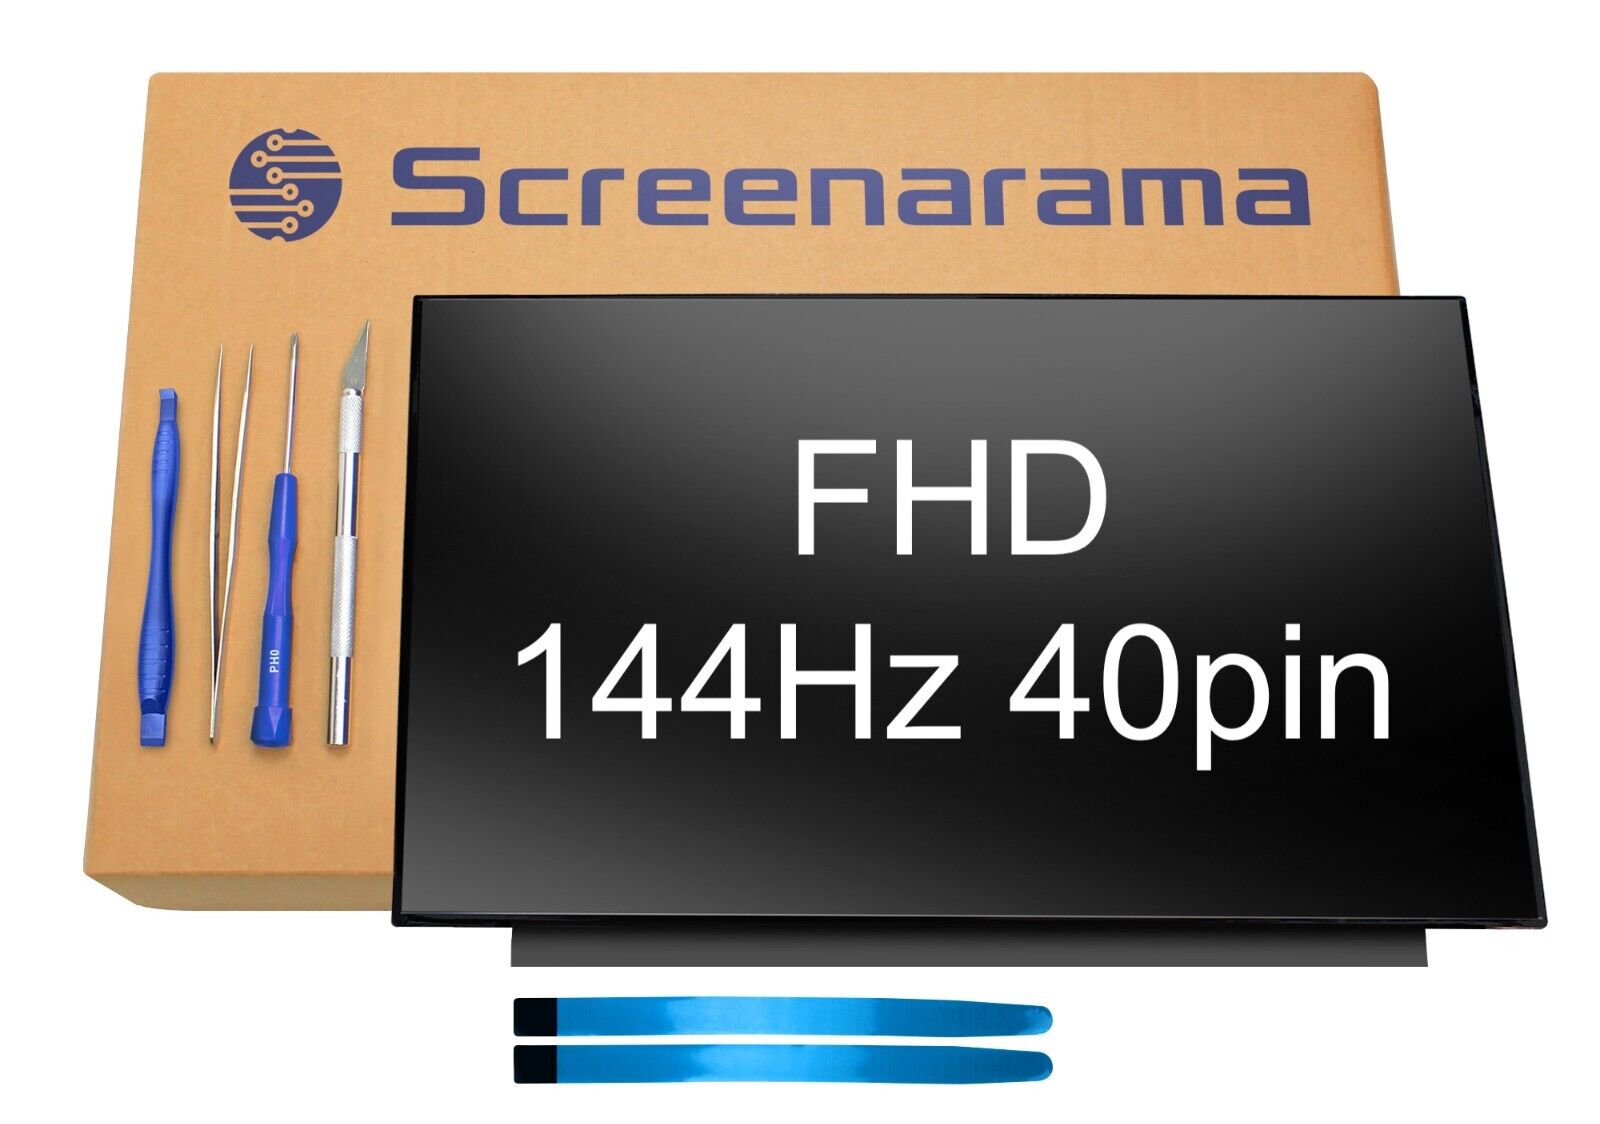 AUO B156HAN08.0 144Hz FHD 1080p 40pin LCD Screen + Tools SCREENARAMA * FAST